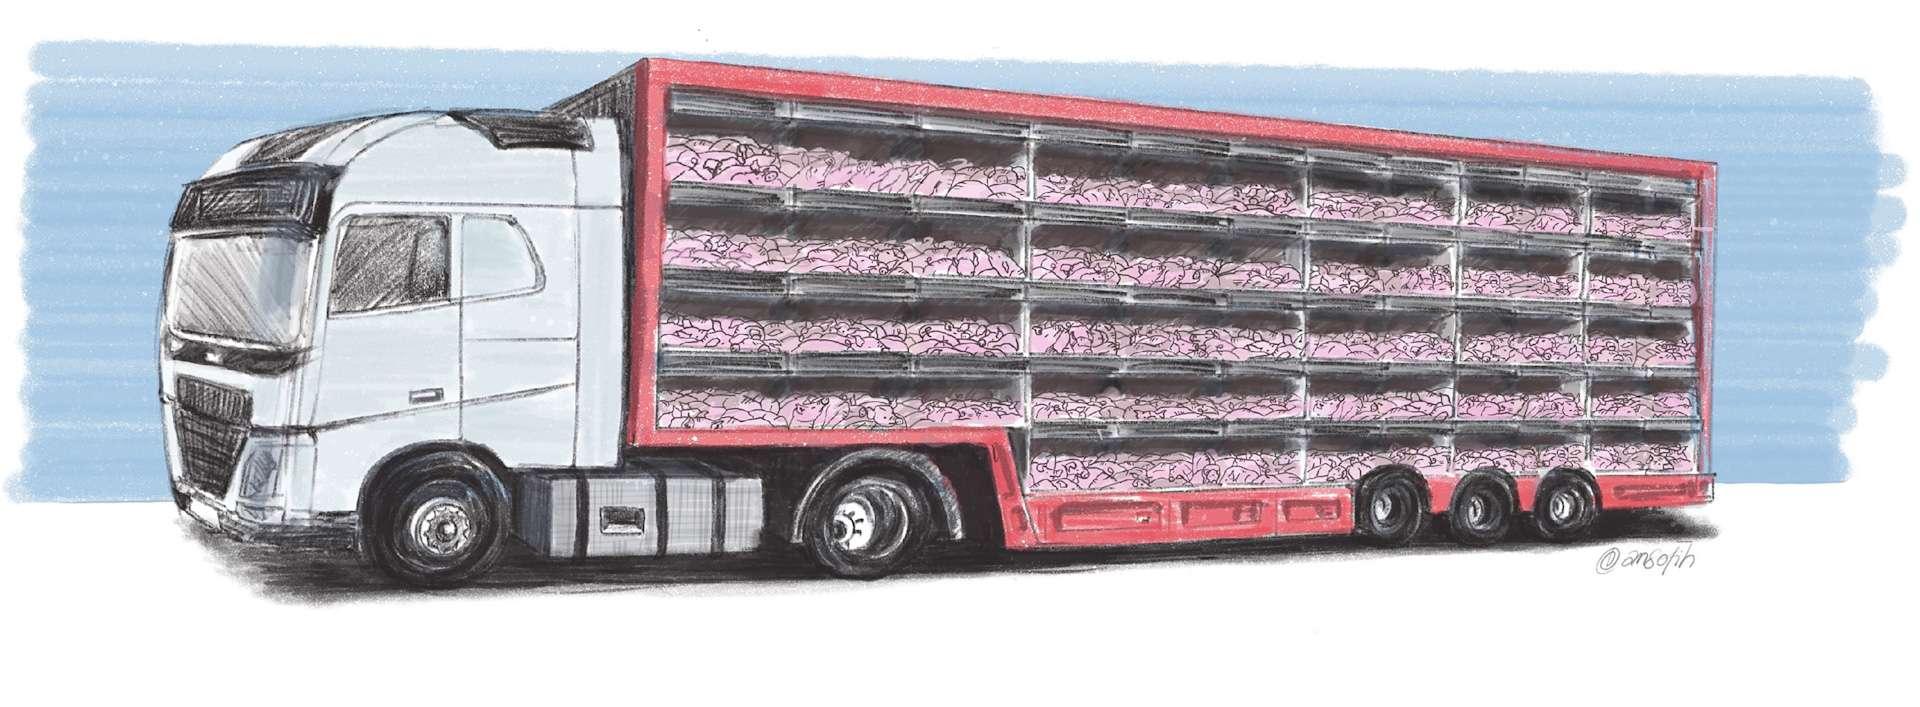 Der findes i dag ingen højdekrav for smågrise under 40 kg, og vognmændene er derfor de senere år begyndt at transportere dem i lastbiler med op til fem etager. Illustration: Anne Sophie Helger